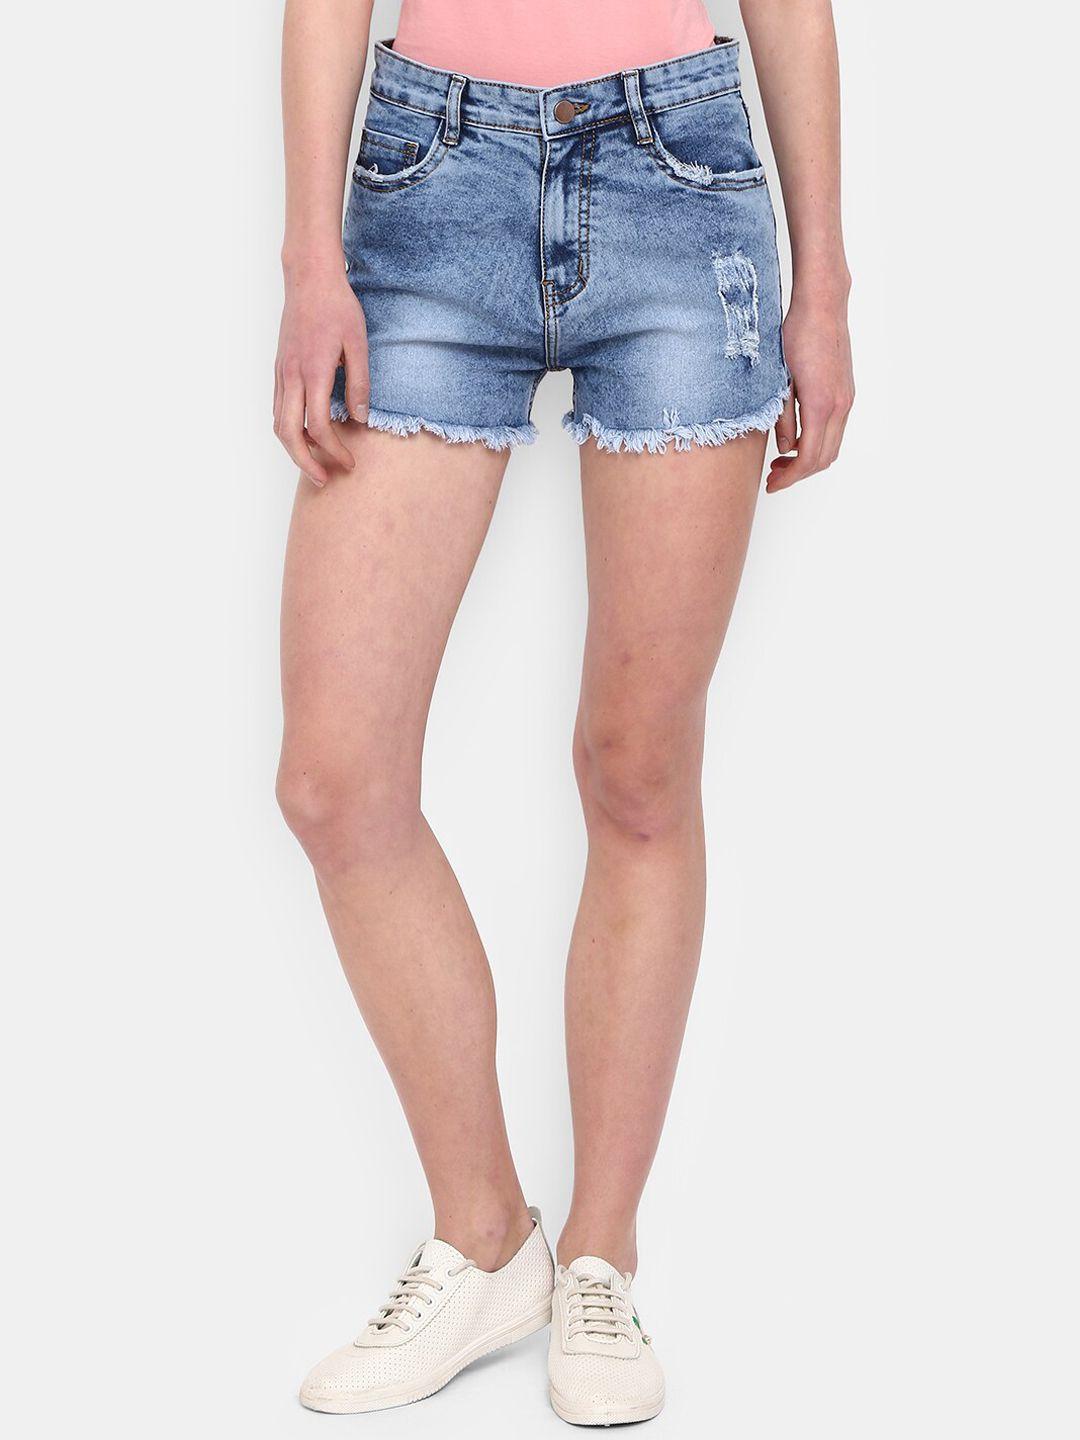 v-mart women blue solid washed outdoor denim shorts